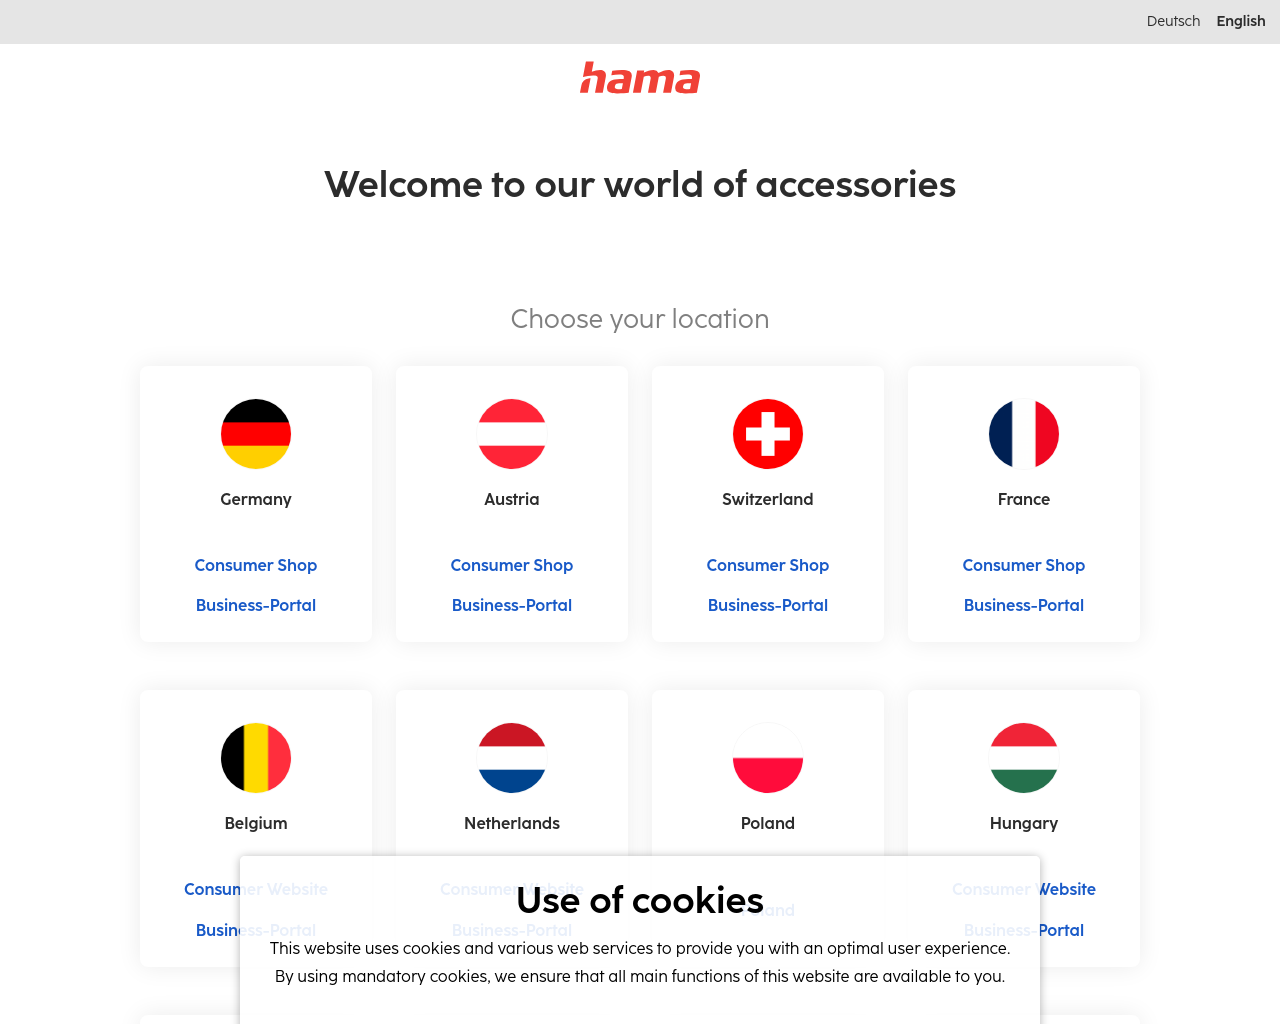 hama.com